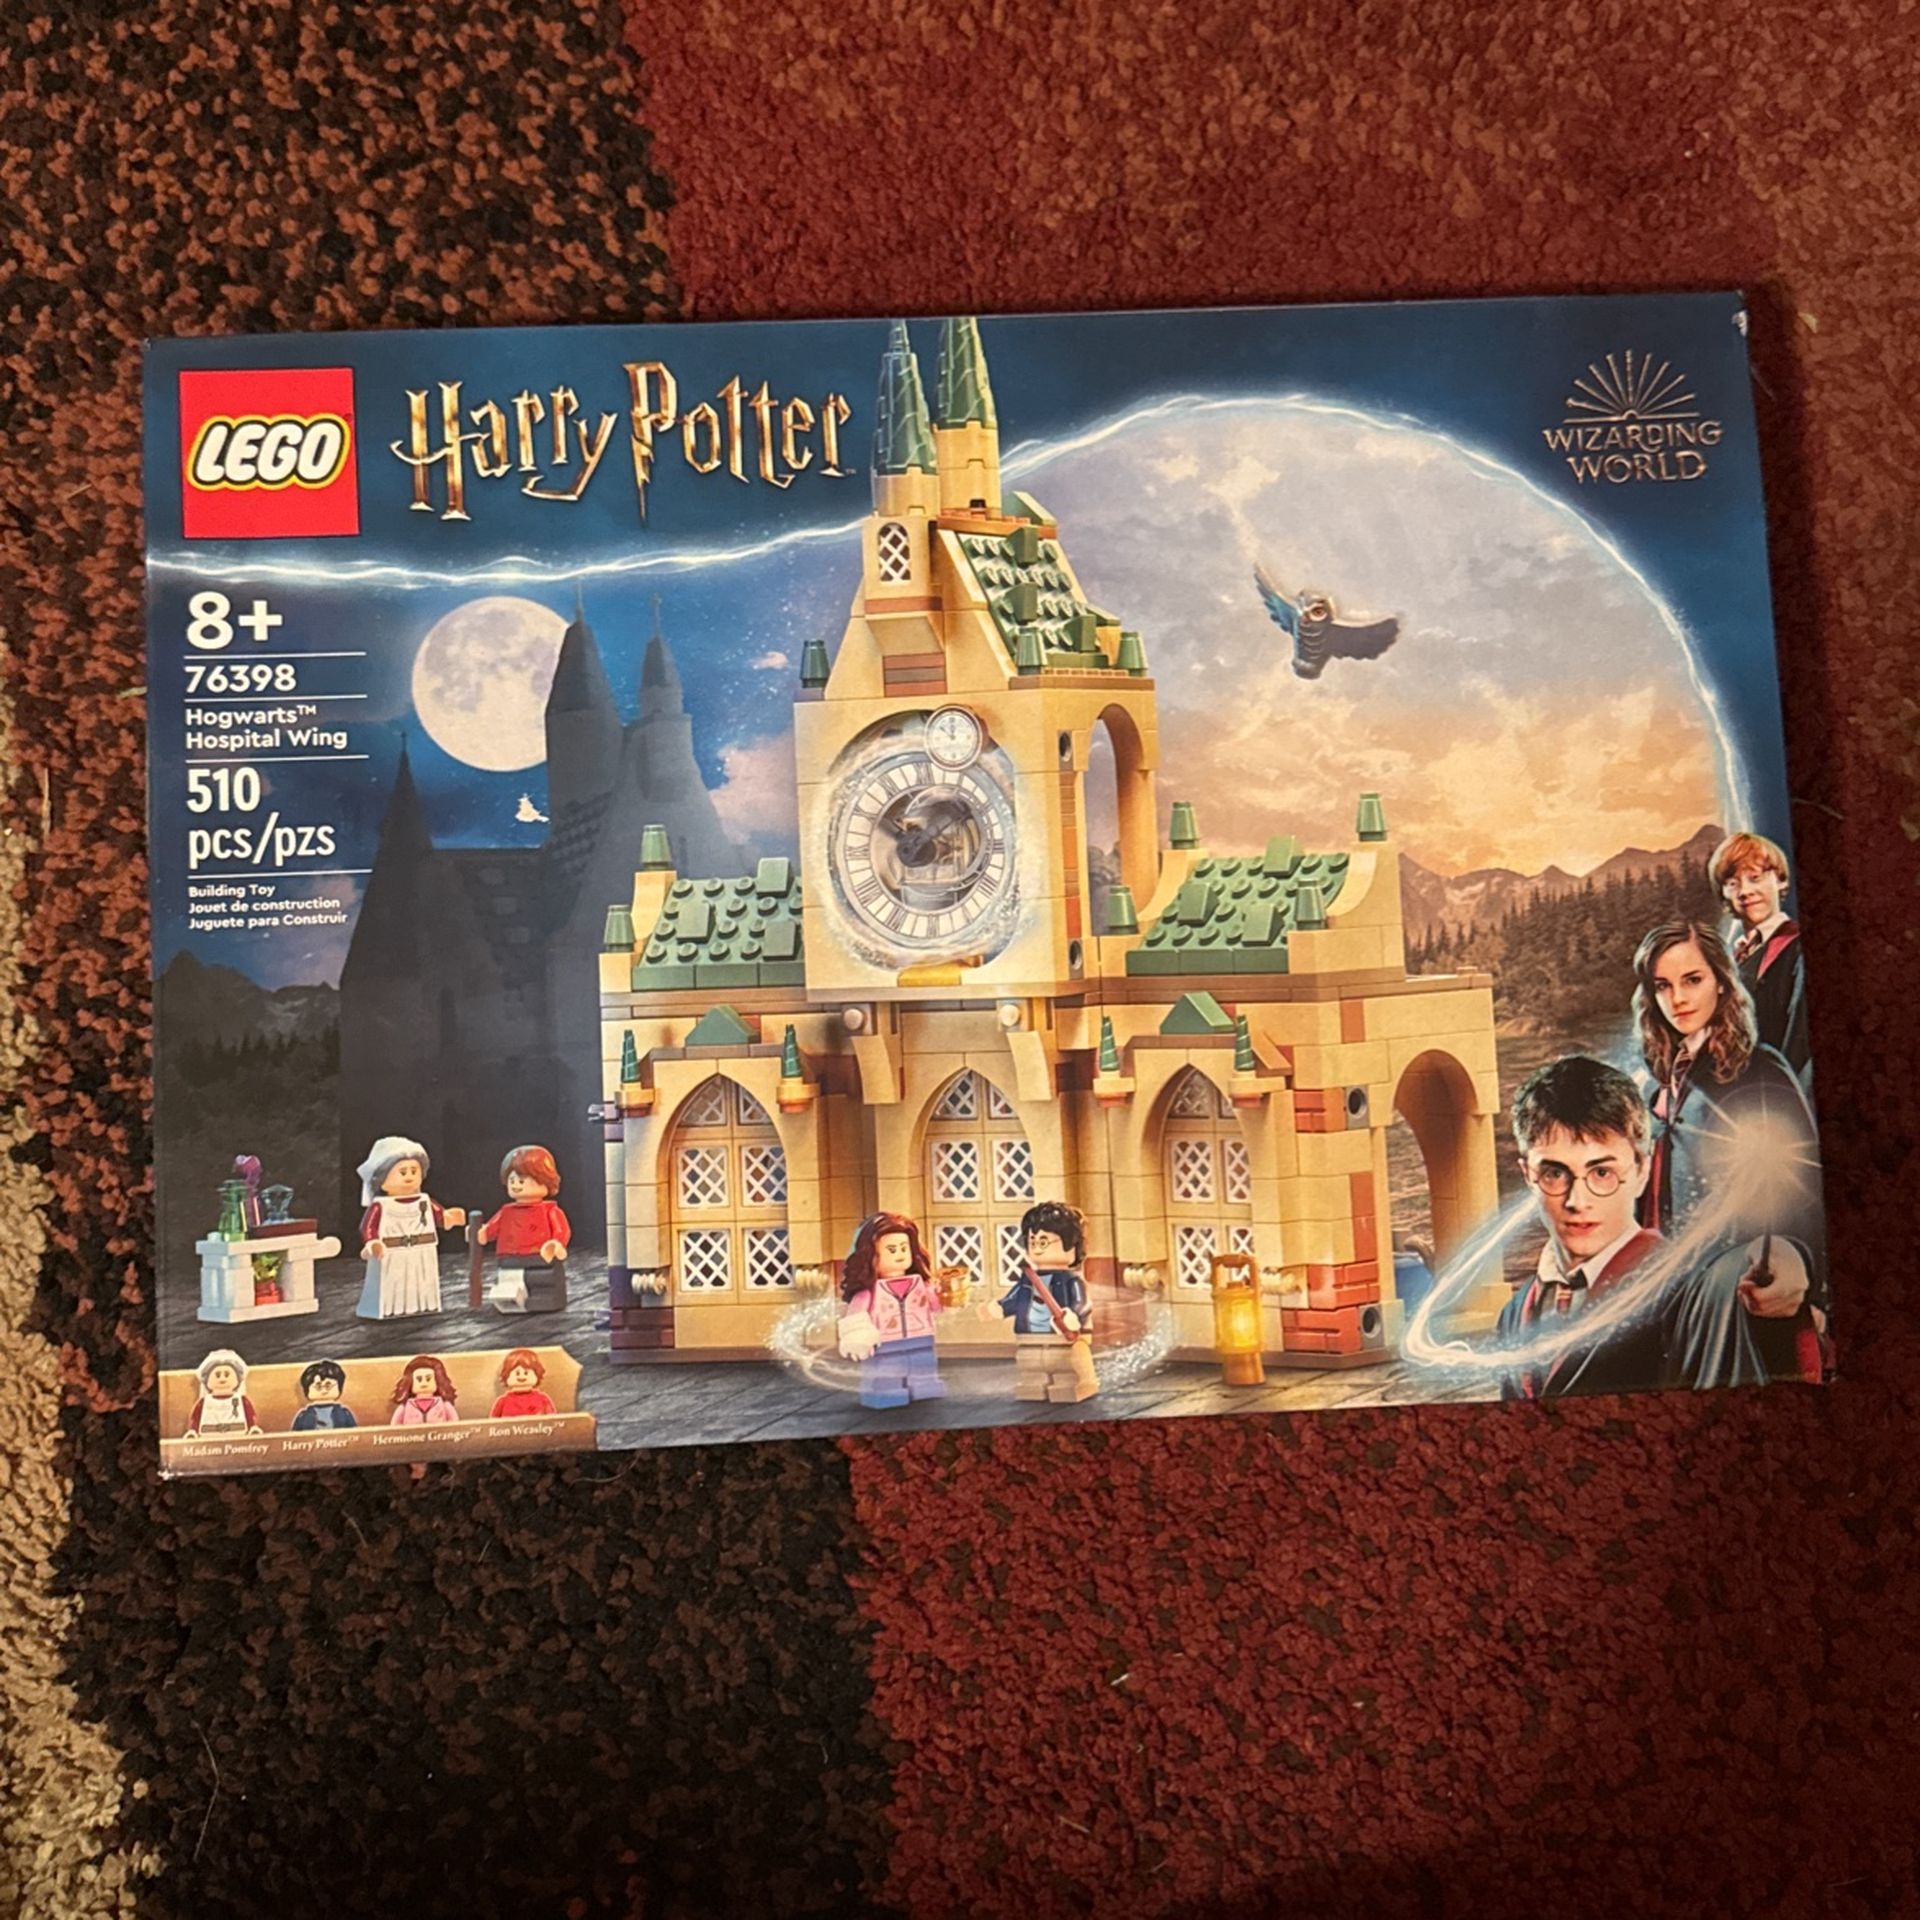 Harry Potter Lego set - Hogwarts Hospital Wing 